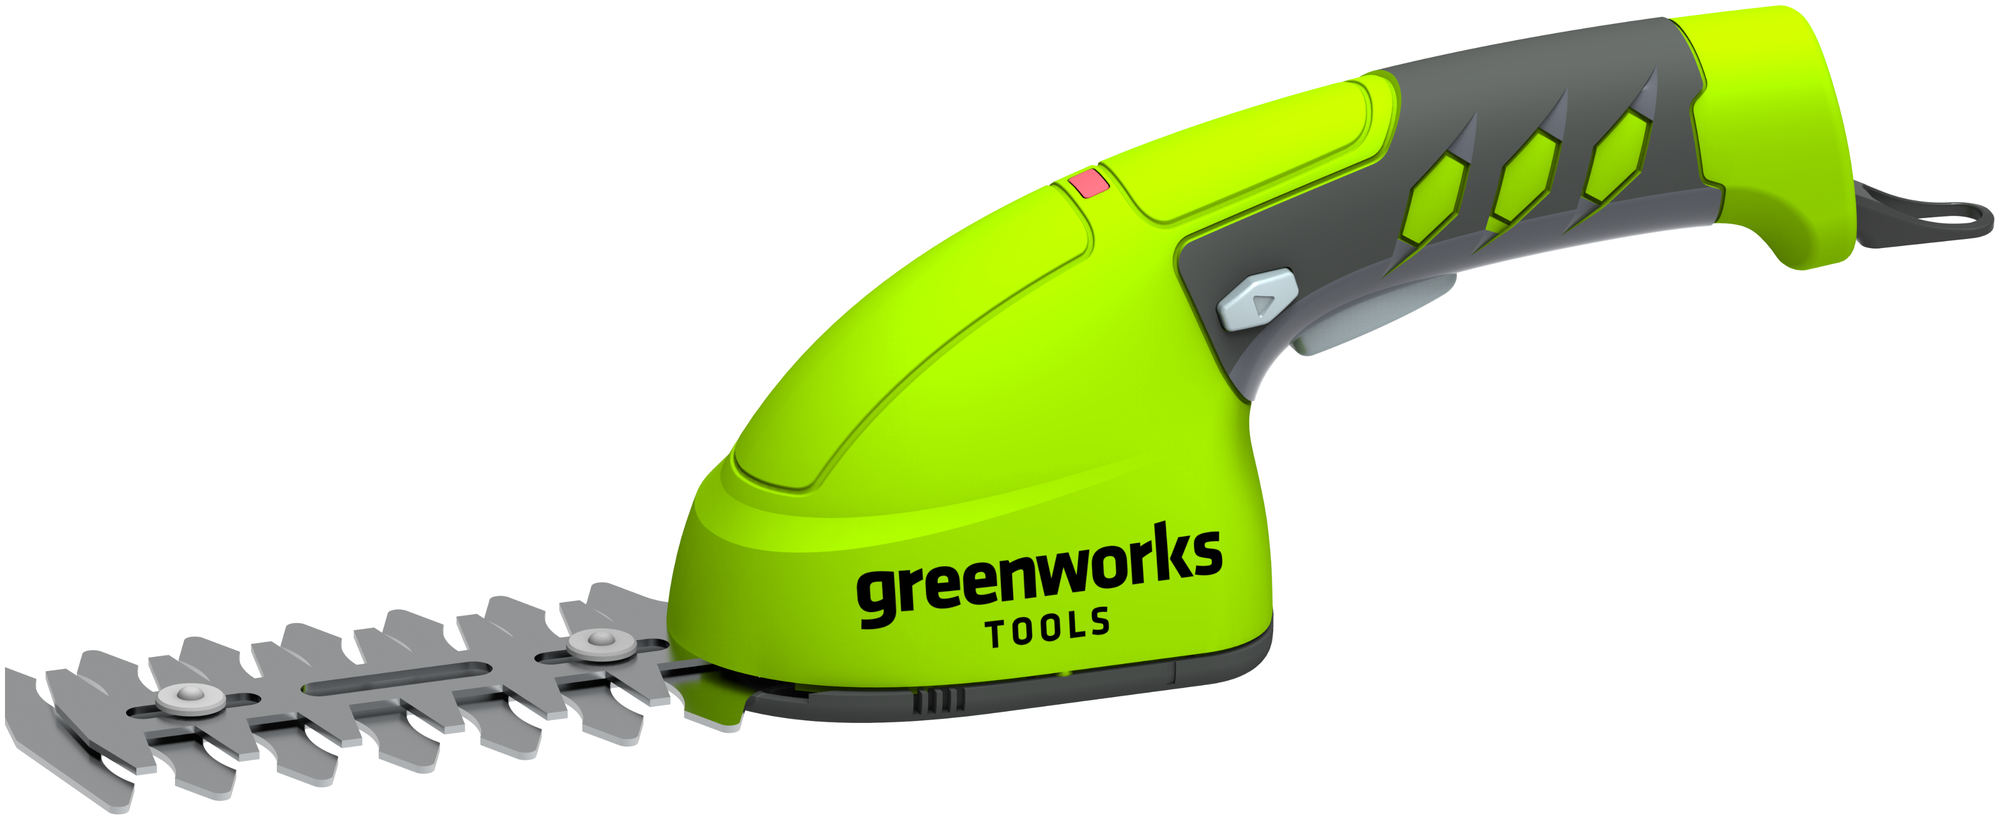 Садовые ножницы аккумуляторные Greenworks Арт. 1600107, 7,2V со встроенным аккумулятором 2 Aч